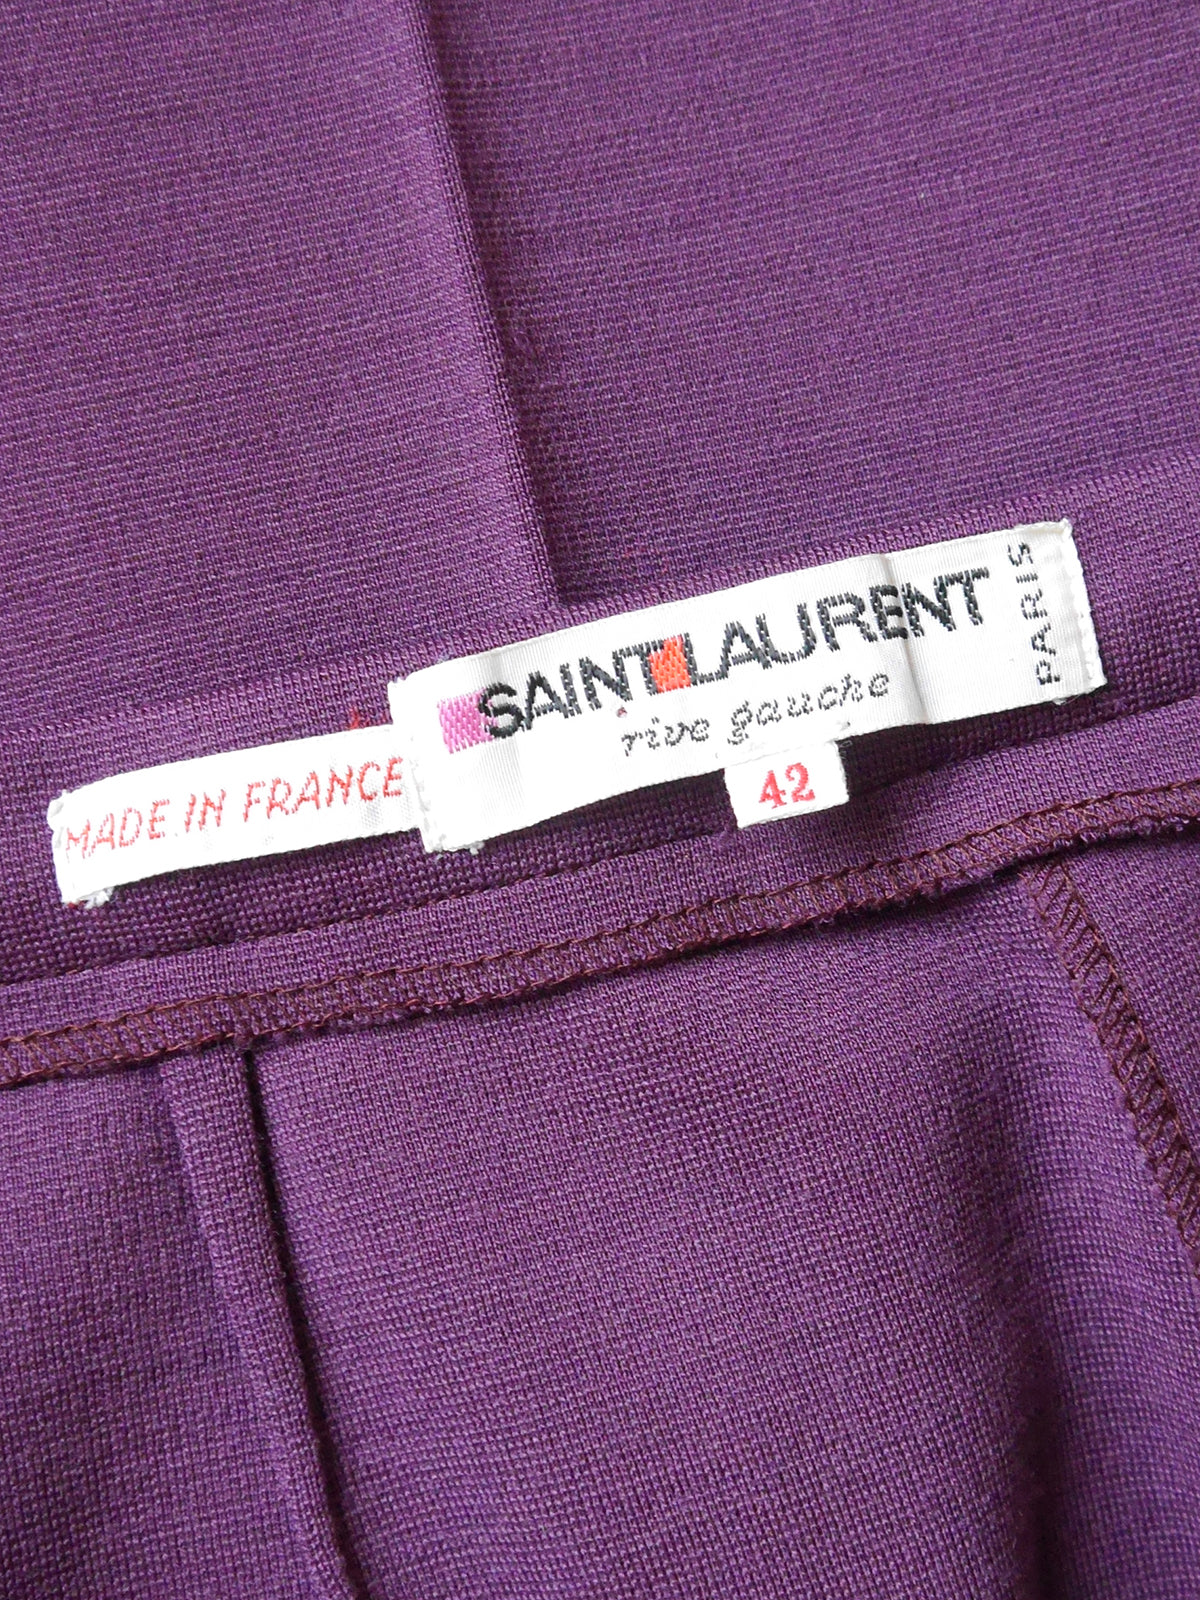 YVES SAINT LAURENT 1960s 1970s Vintage Purple Jersey Shirt & Pants Suit